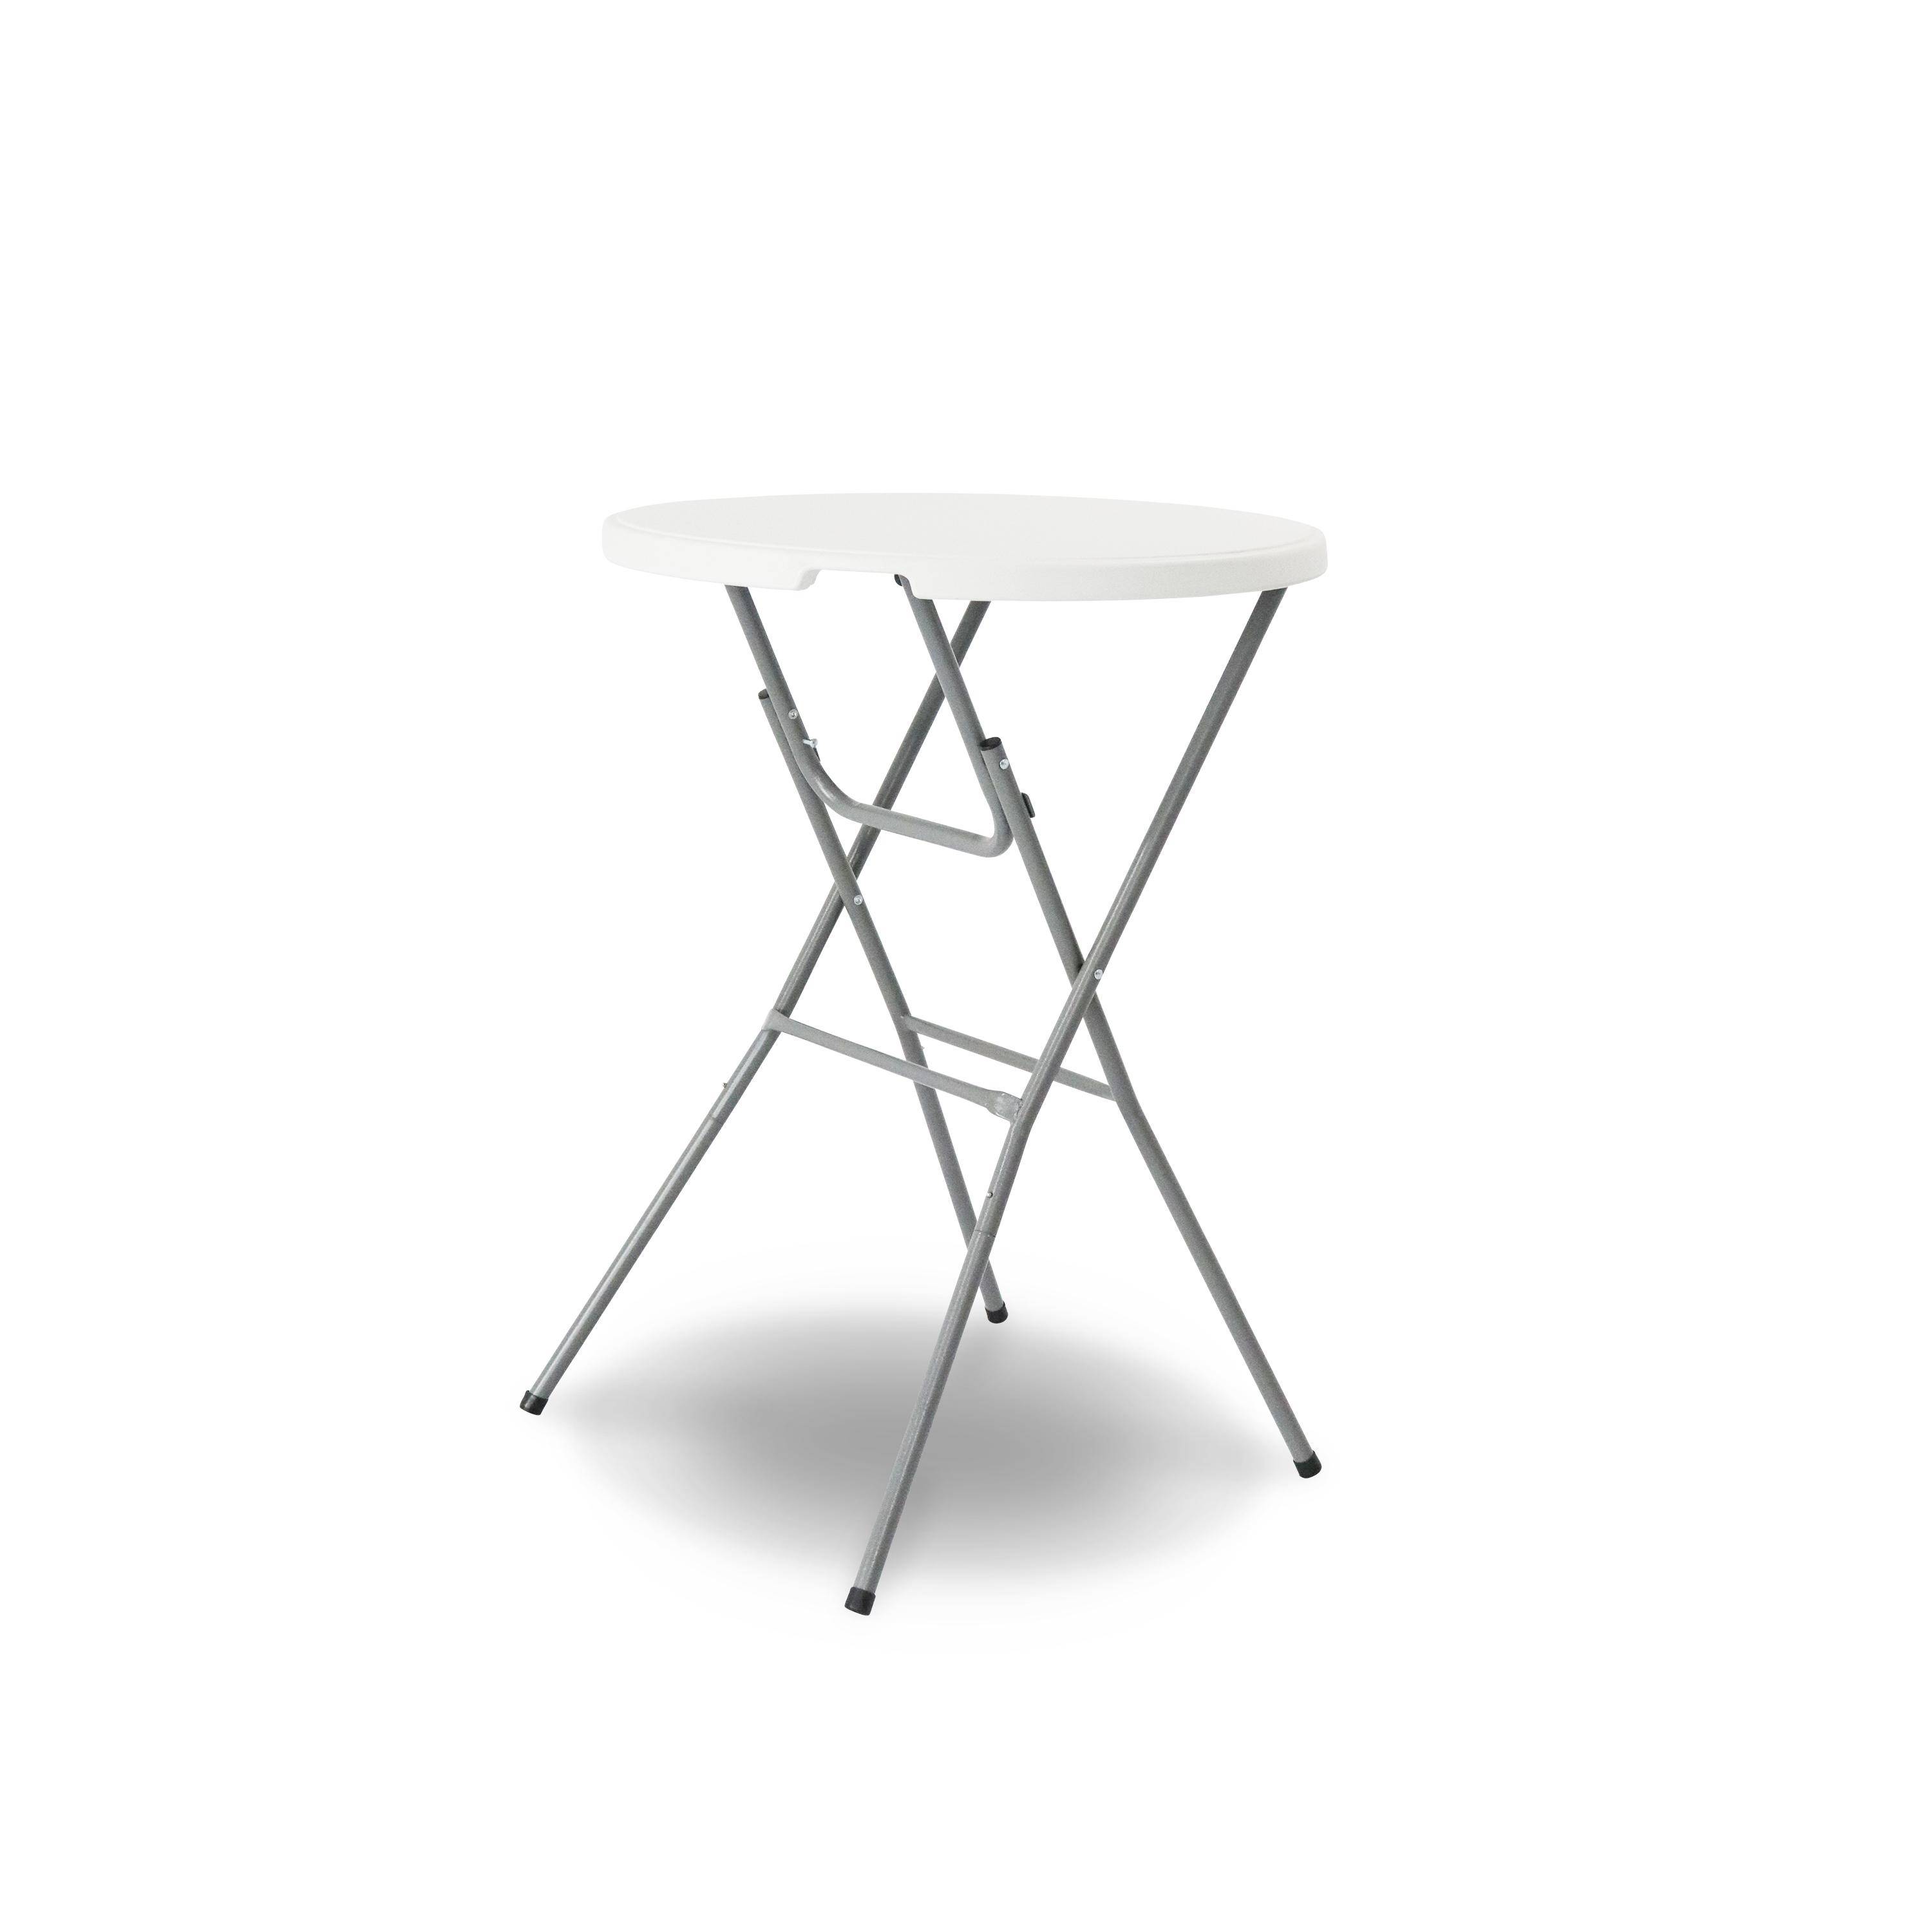 Table haute de réception – GALA – Mange debout, pliable, Ø80cm x 110cm + housse en polyester, blanc ,sweeek,Photo2